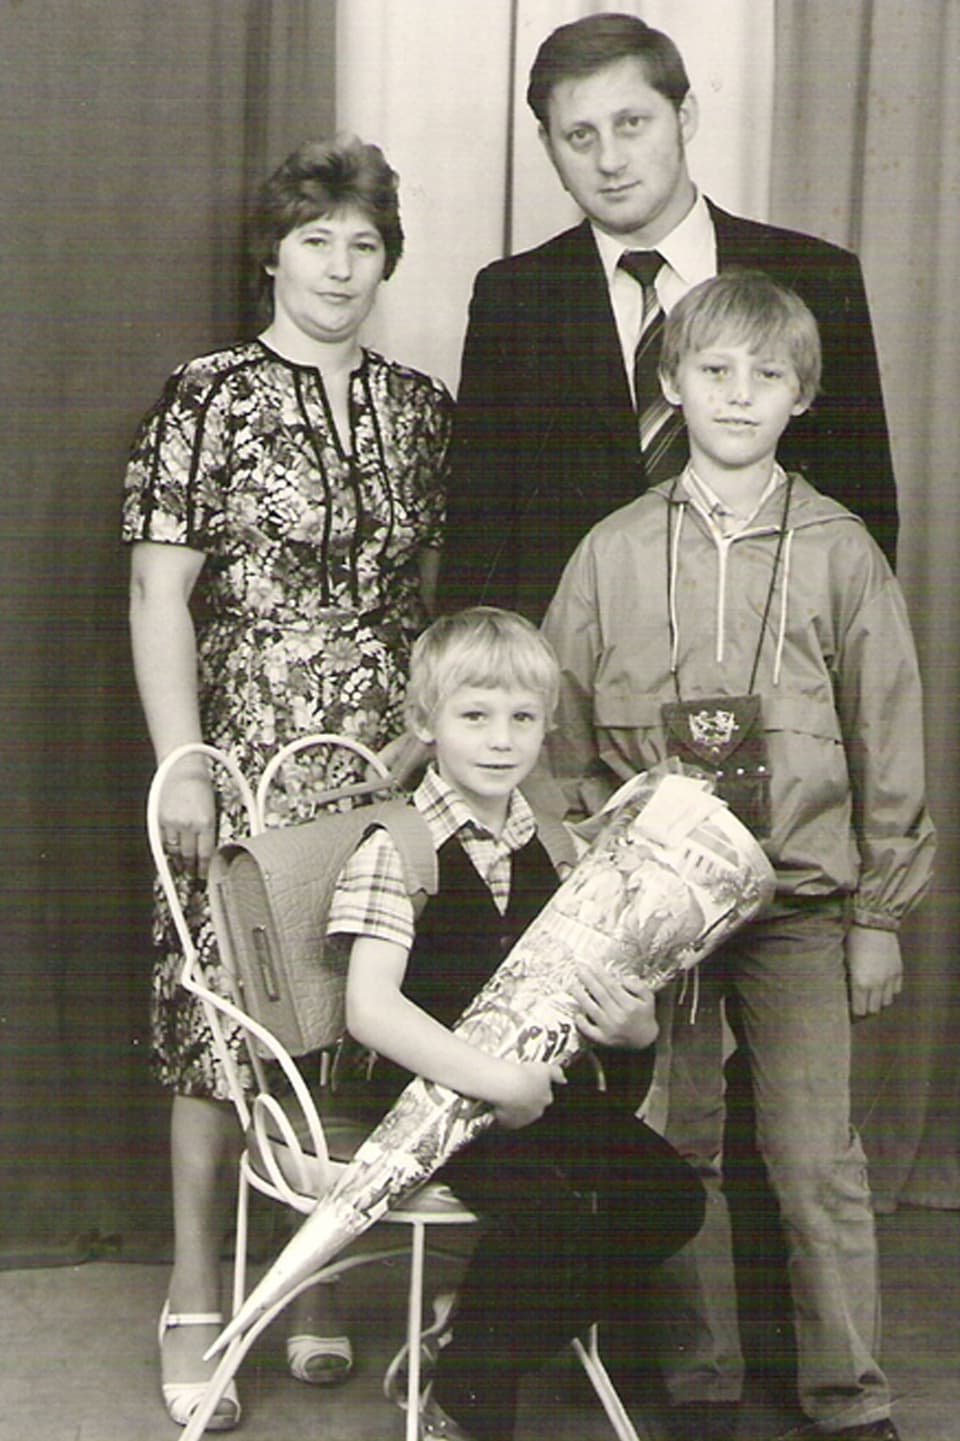 Christian Grothes Familie bei dessen Schuleinführung. Stehend Mutter, Vater, Bruder. Christian auf einem Stuhl sitzend mit einer Zuckertüte in der Hand.